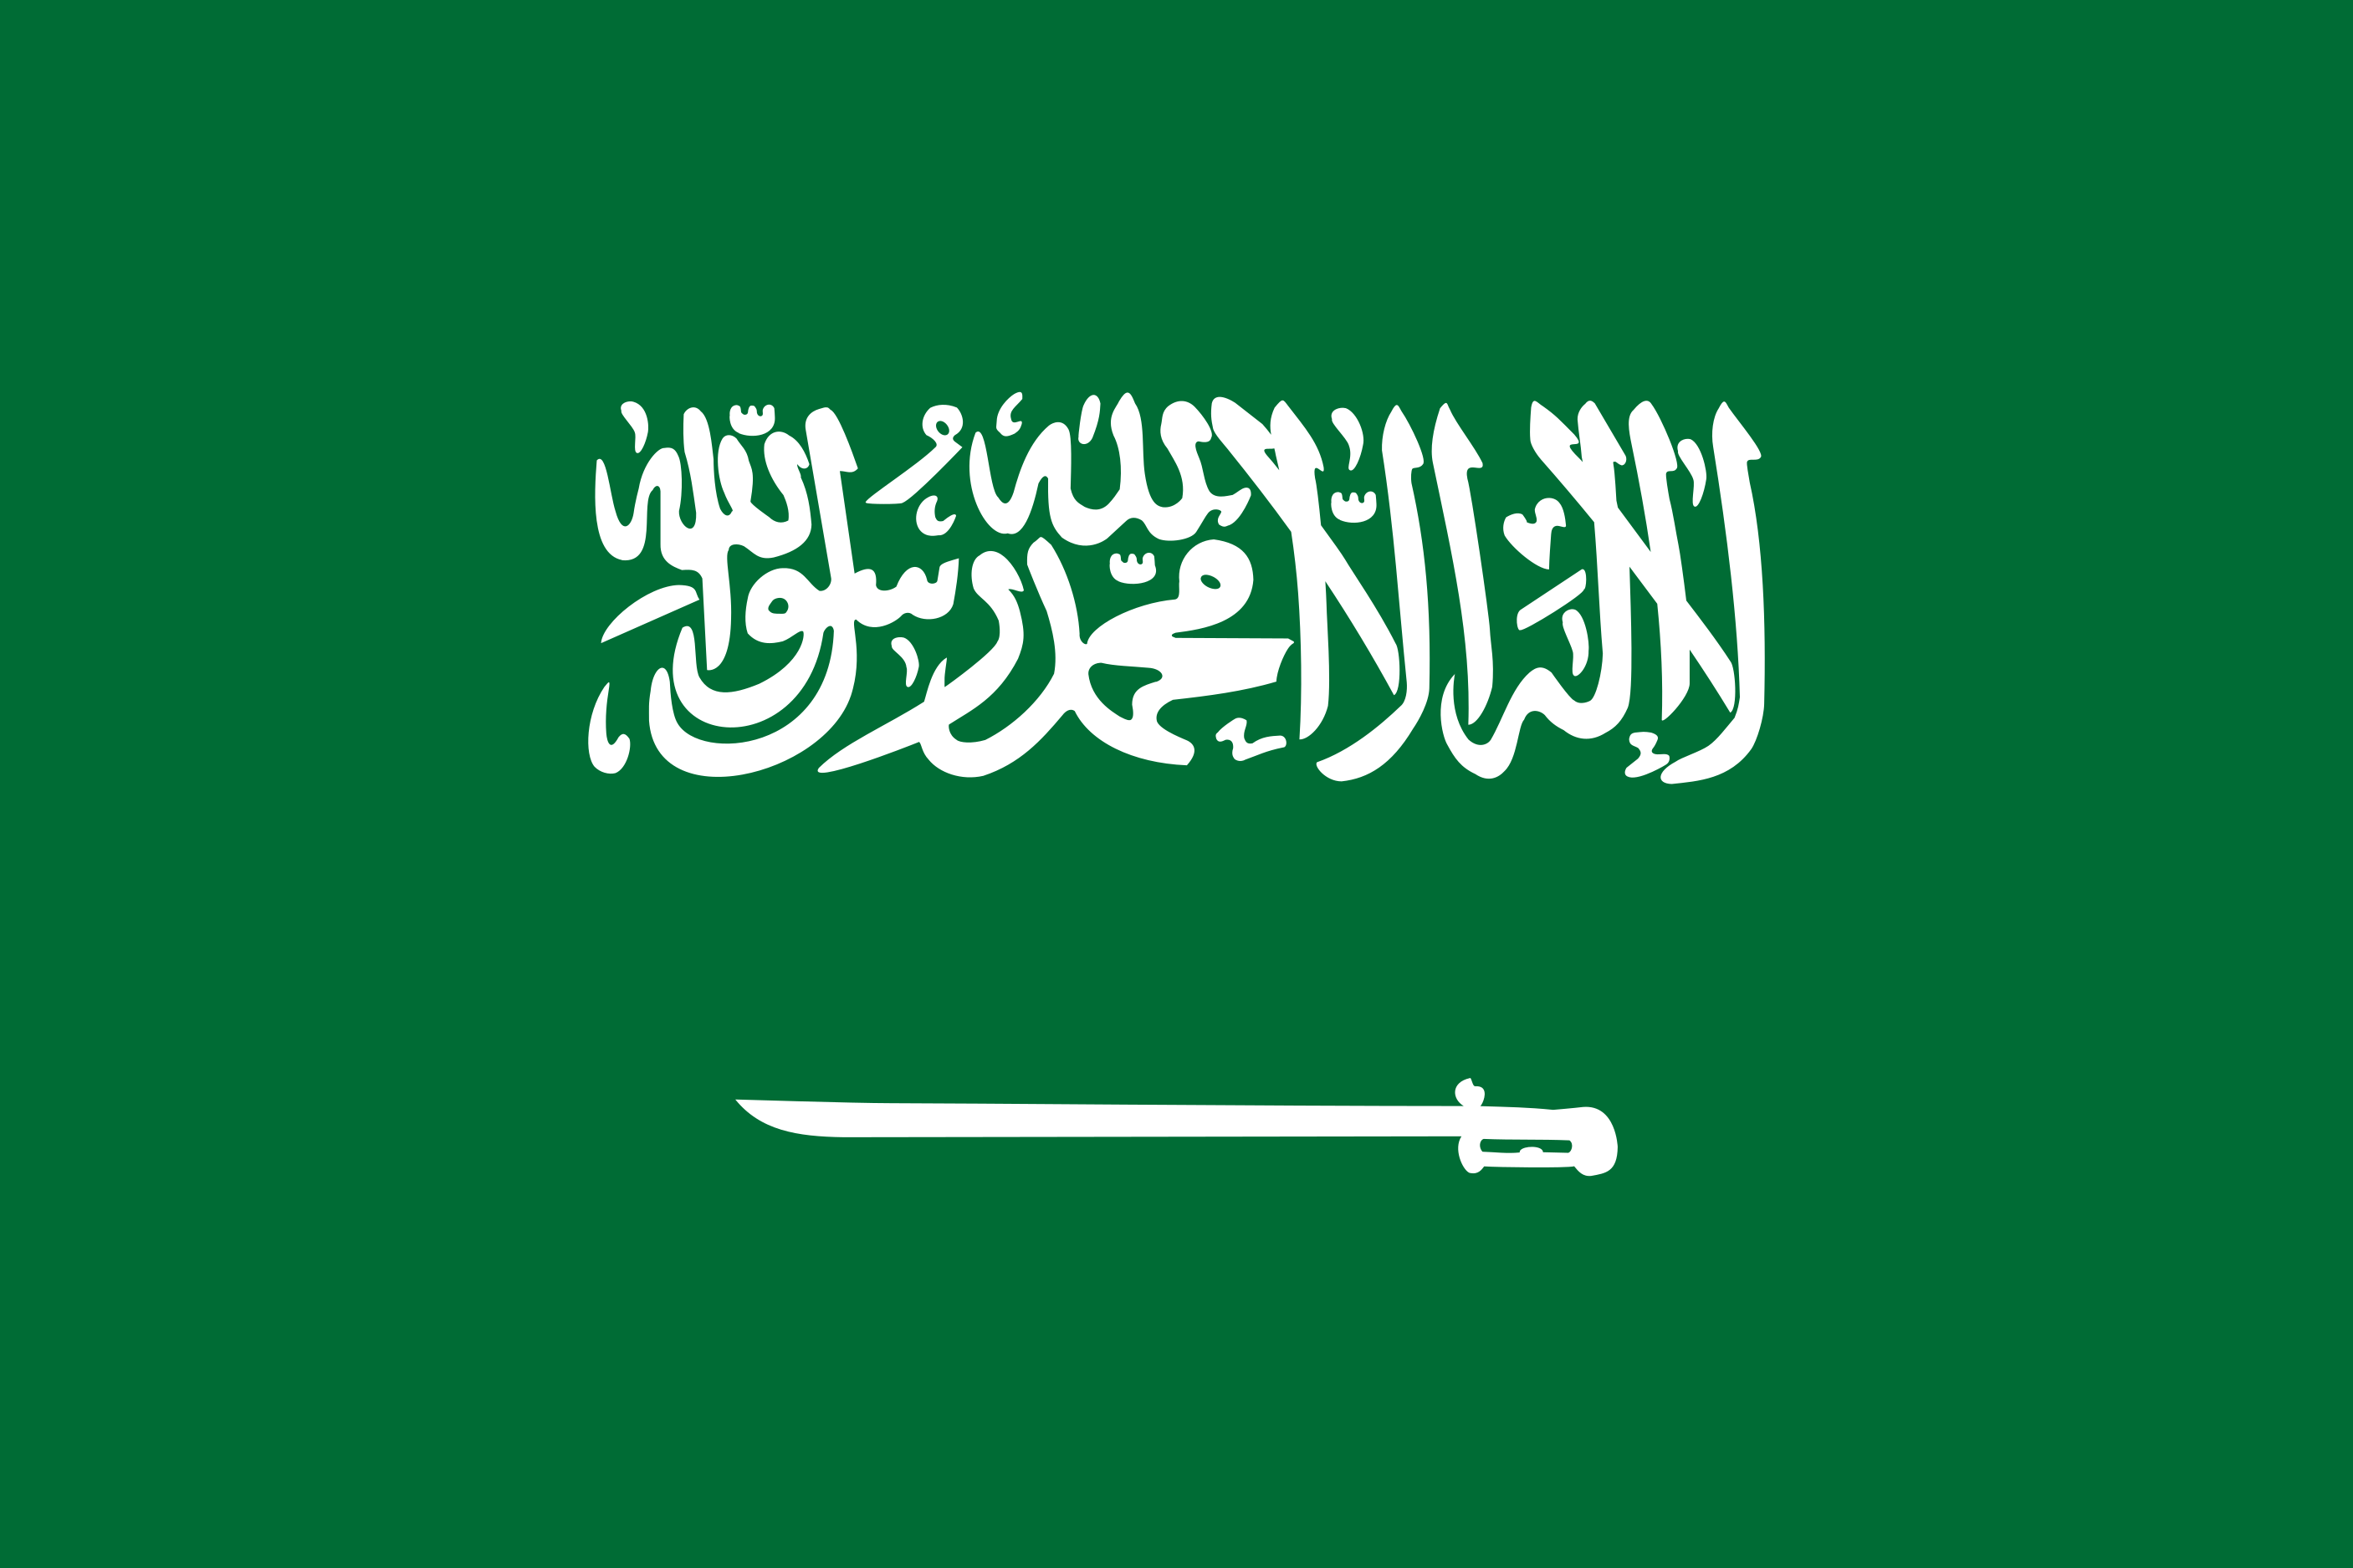 Saudi Arabia Flag Vector - Free Download